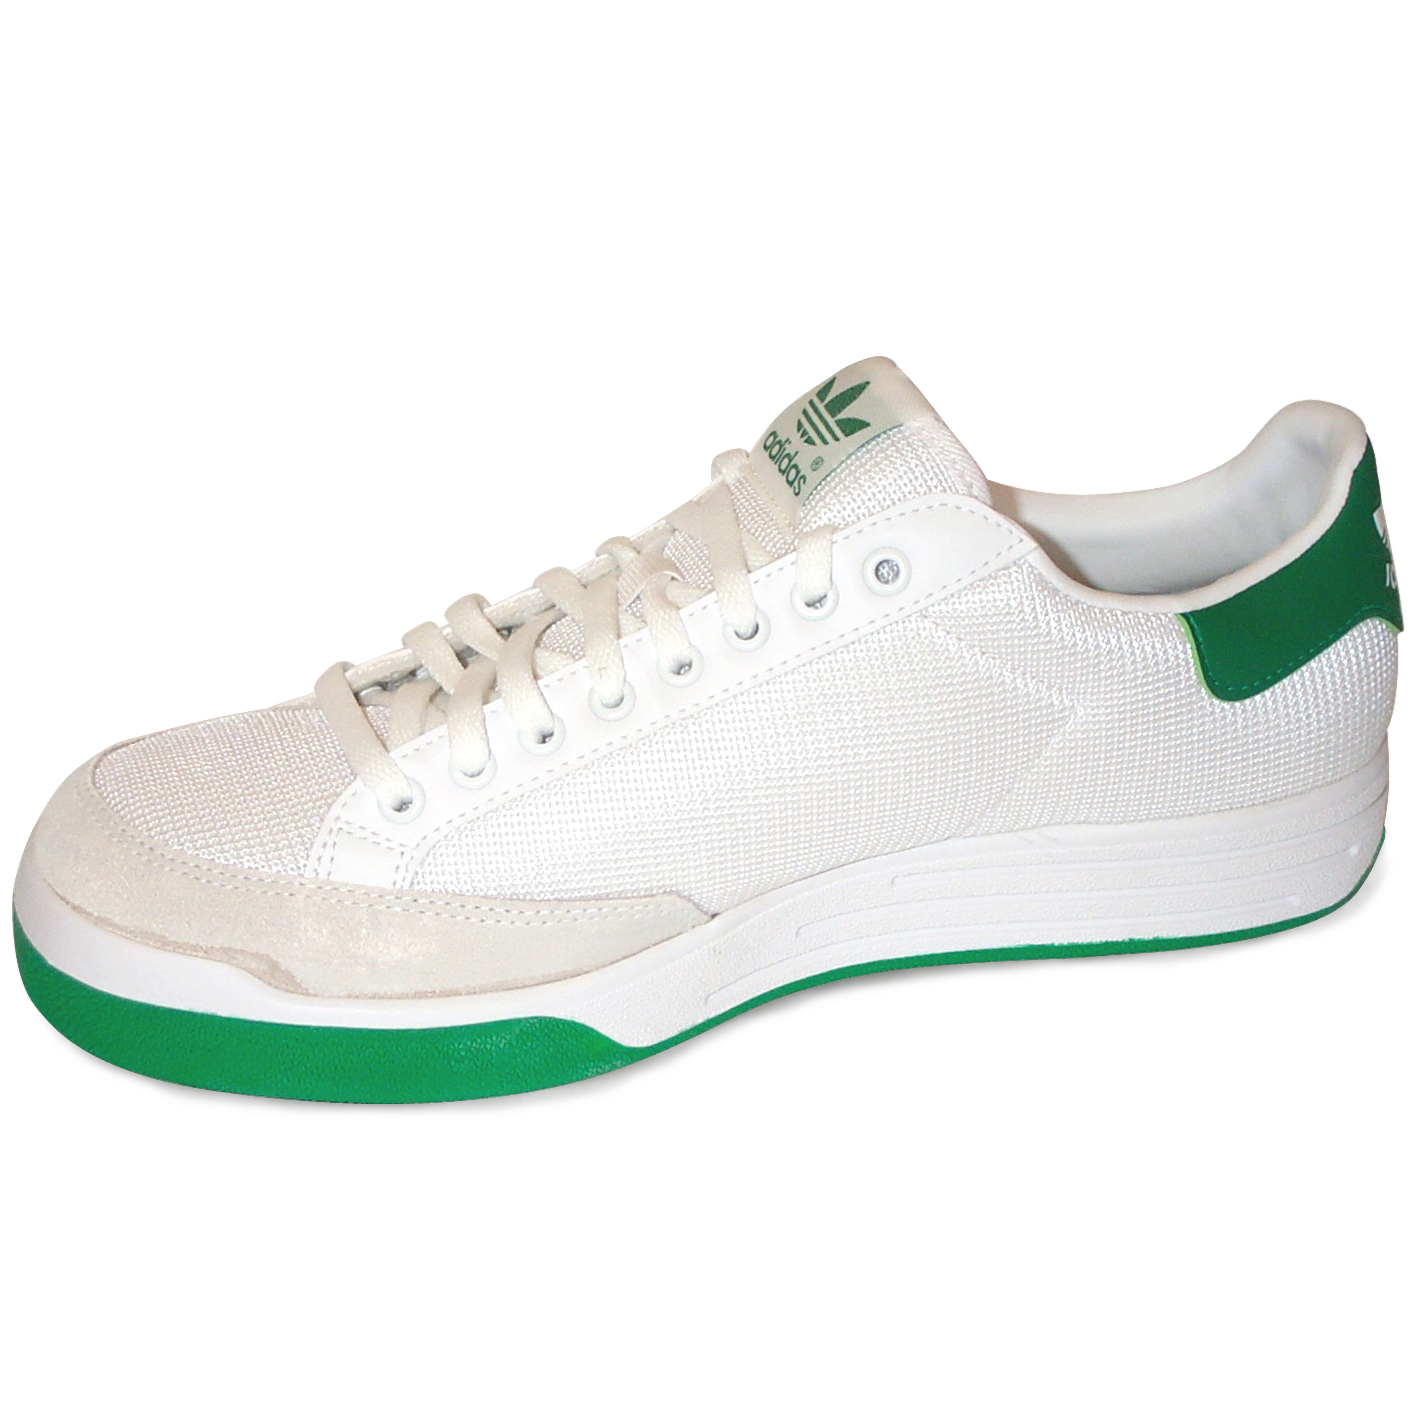 adidas gym shoes white